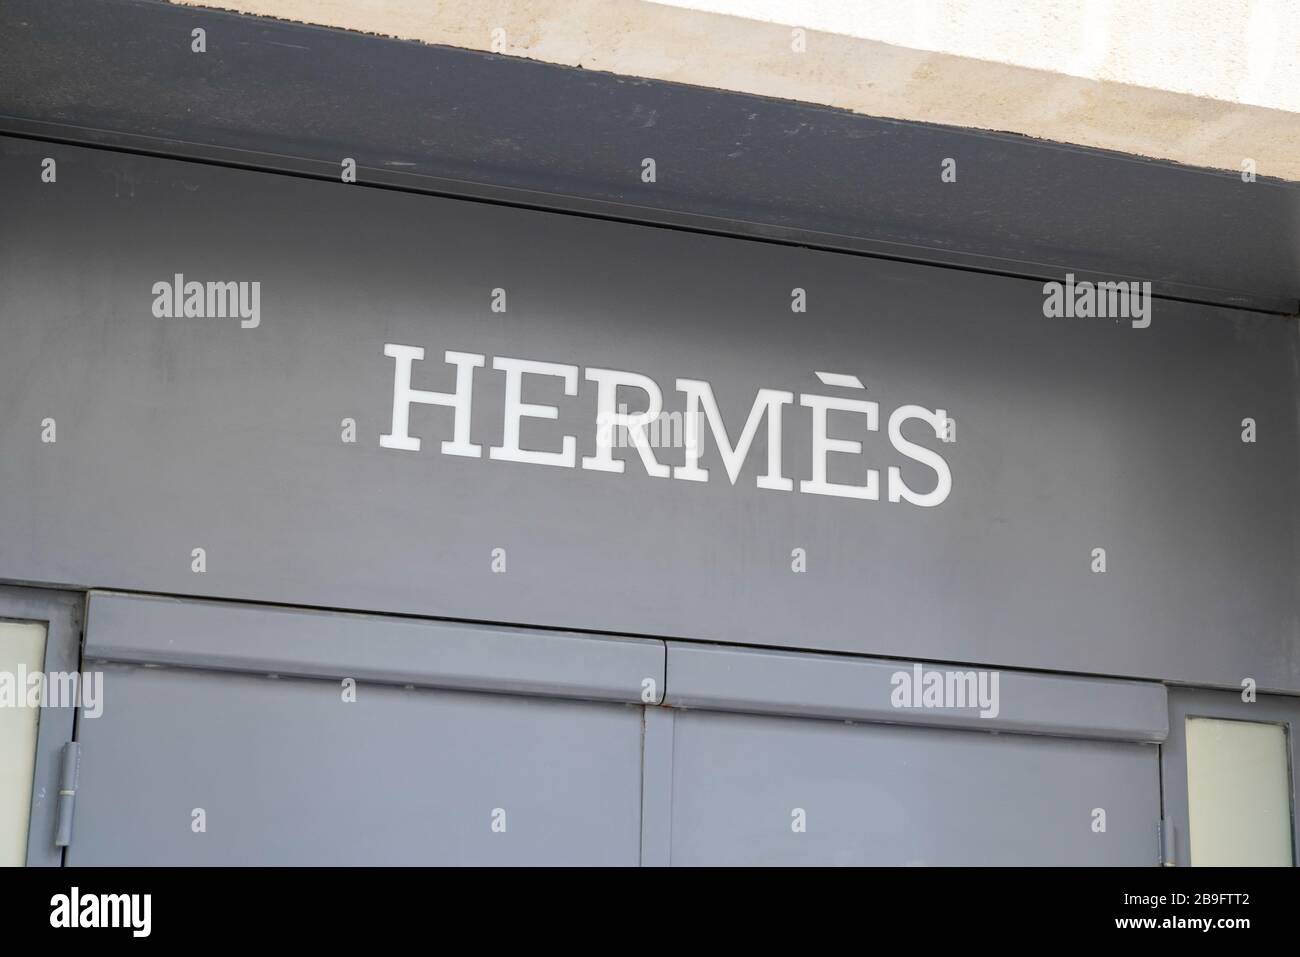 Hermès boutique Saint Tropez France Stock Photo - Alamy